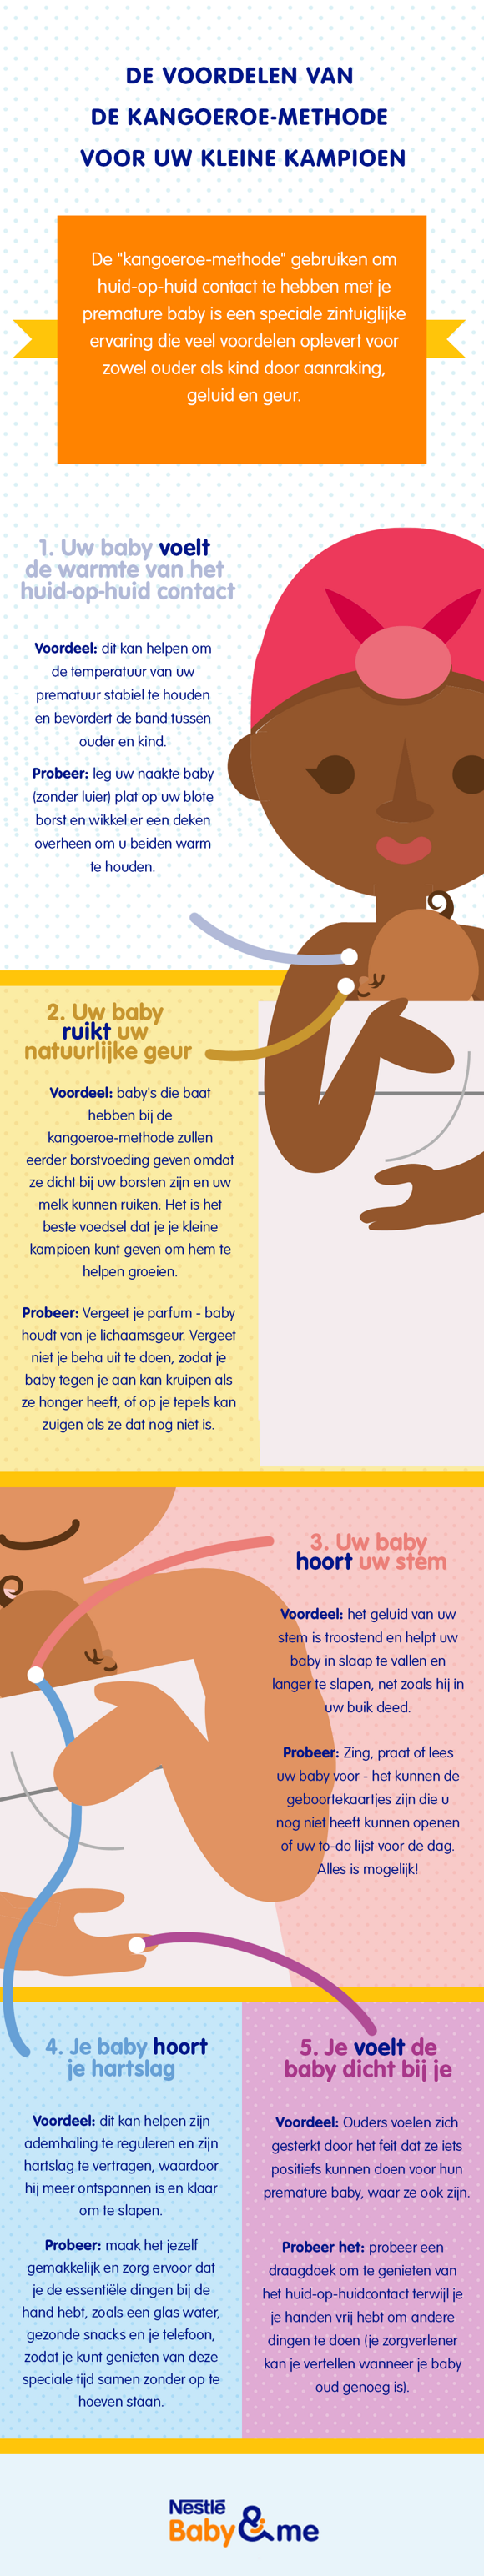 infographic met uitleg over de kangoeroe-methode voor premature baby's